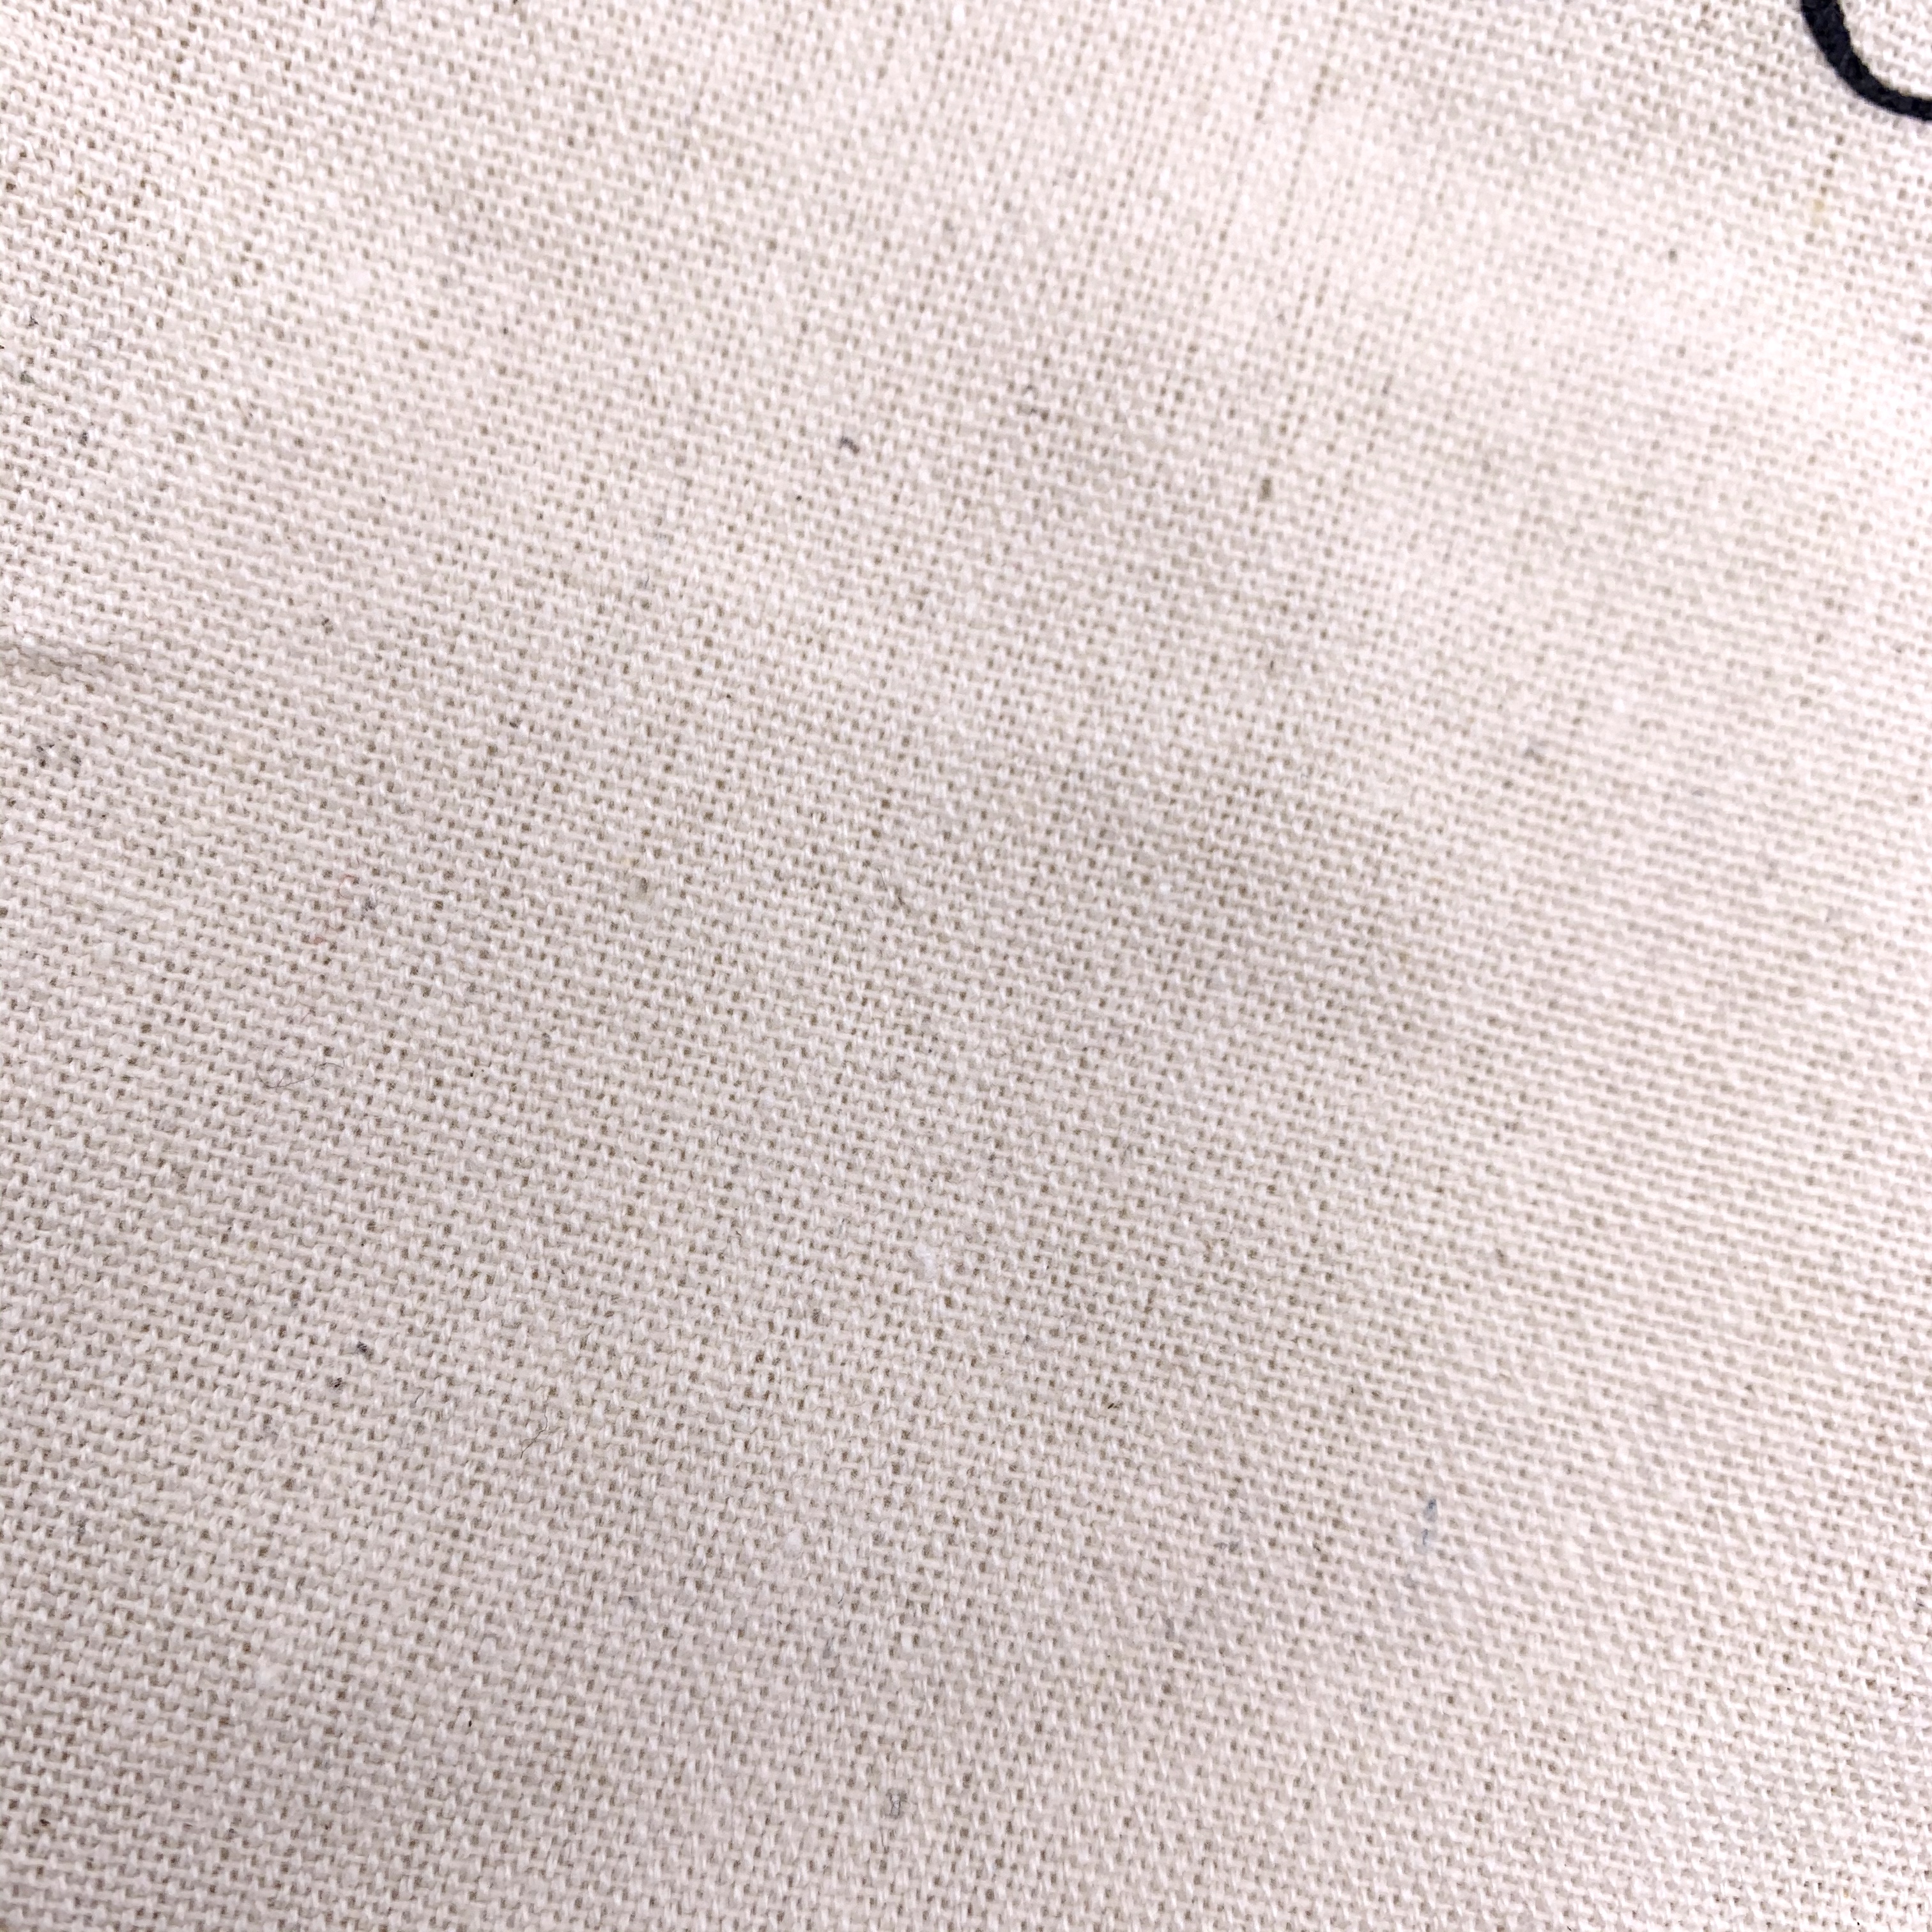 Bag Texture for Cocotique June 2020